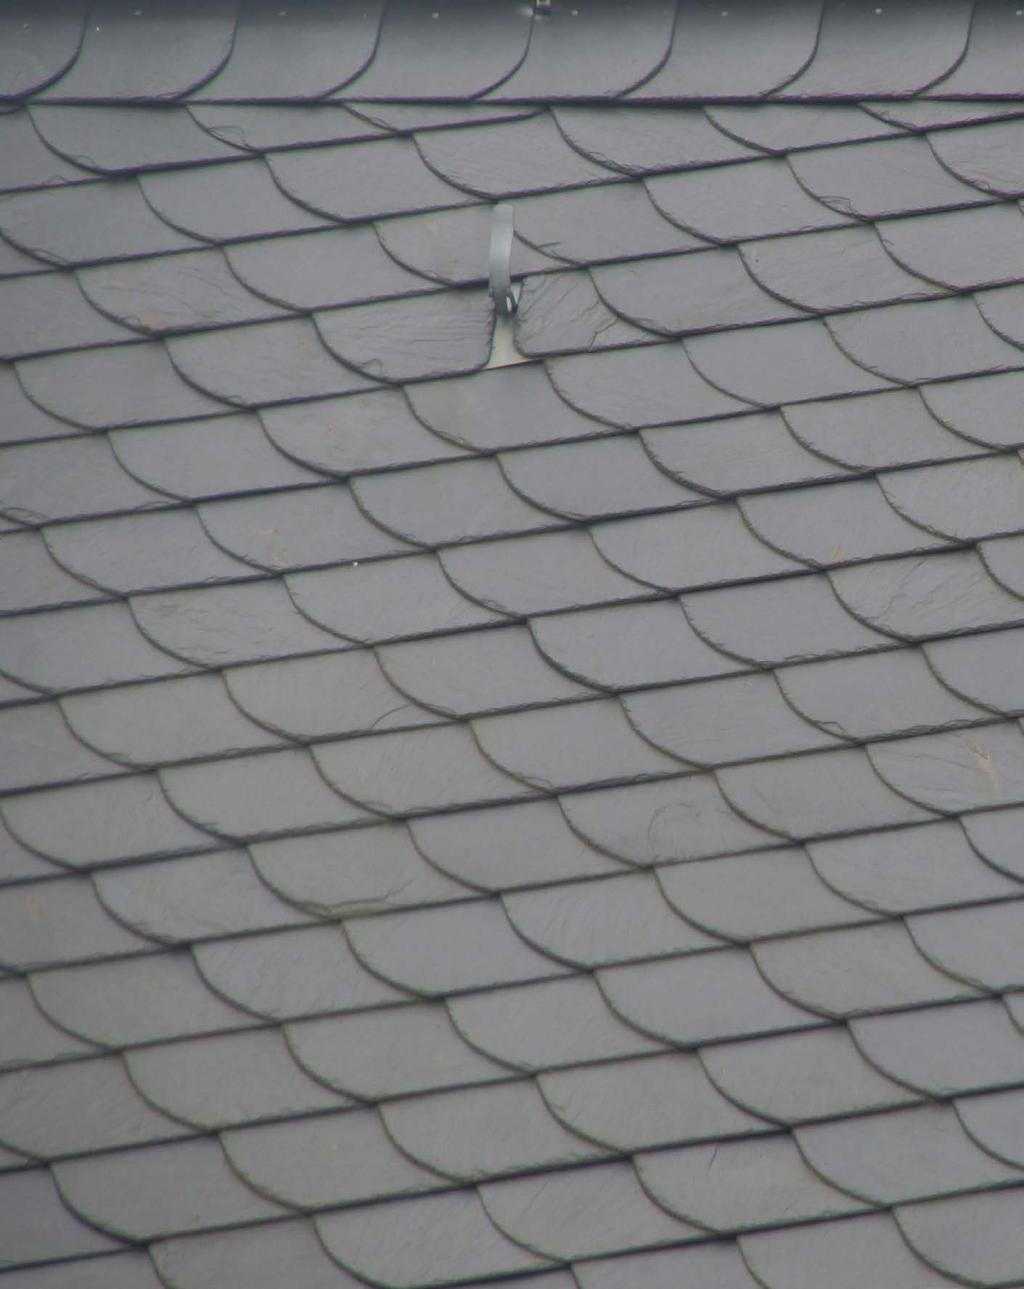 Wir suchen Auszubildende! Dachgärten laden zum Ausruhen und Wohlfühlen ein. (Foto: Bundesverband Gebäudegrün/akz-o) (akz-o).